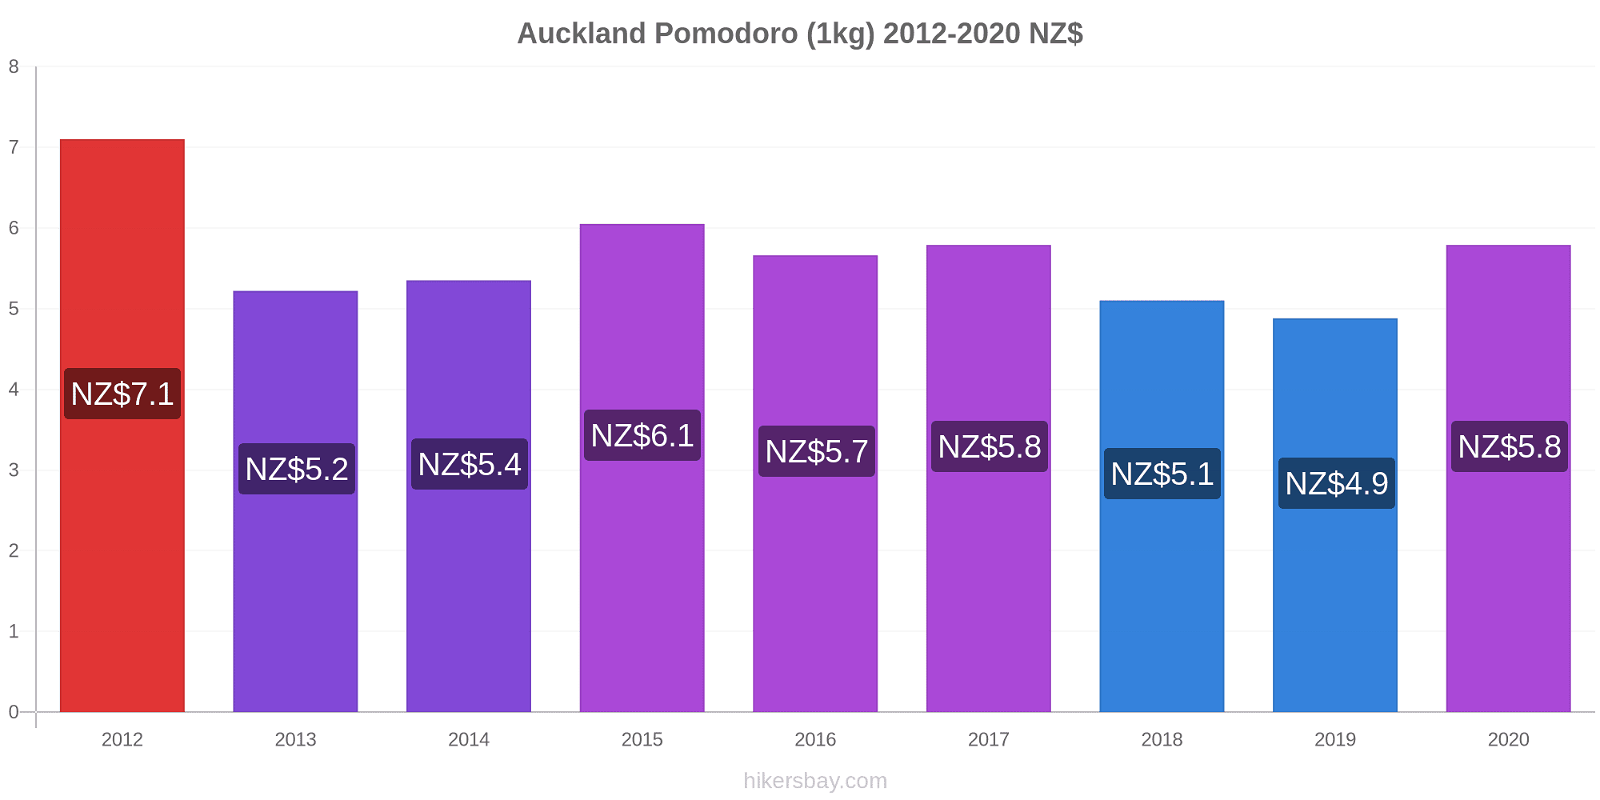 Auckland variazioni di prezzo Pomodoro (1kg) hikersbay.com